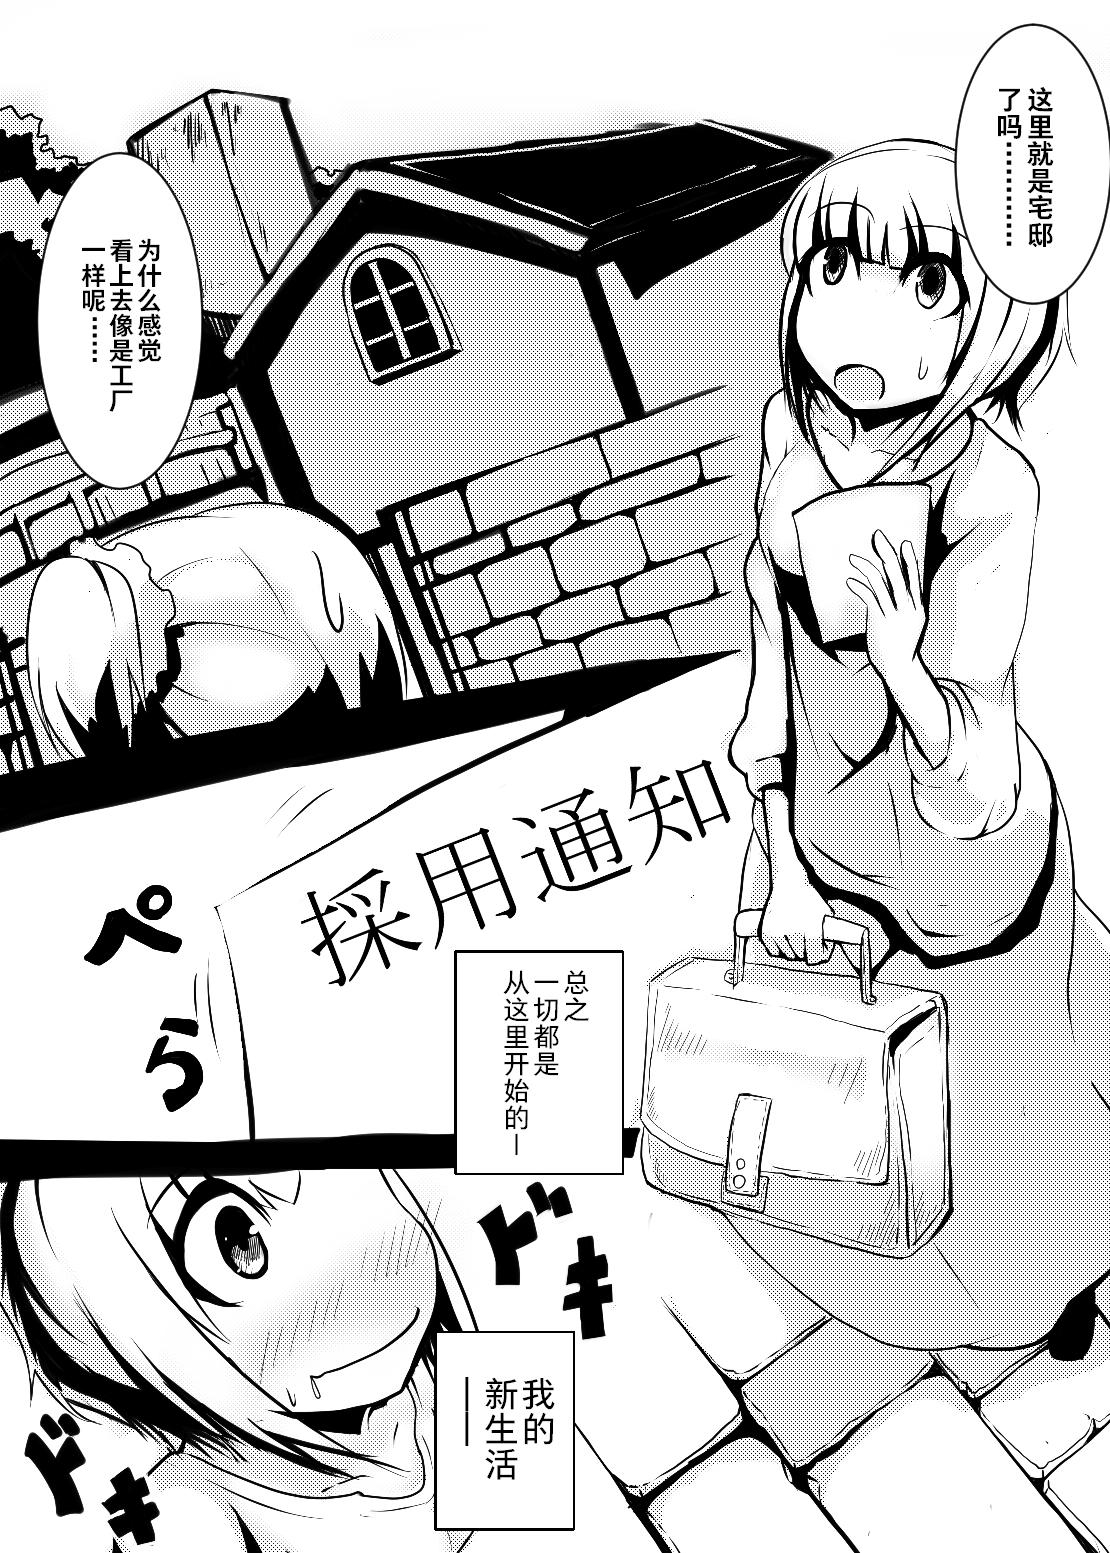 Maid-san no Chichi o Ookiku Shitari Shishi o Buttagiru dake no Manga | 这只是一部关于把女仆小姐的乳房变大并且砍断四肢的漫画而已 2